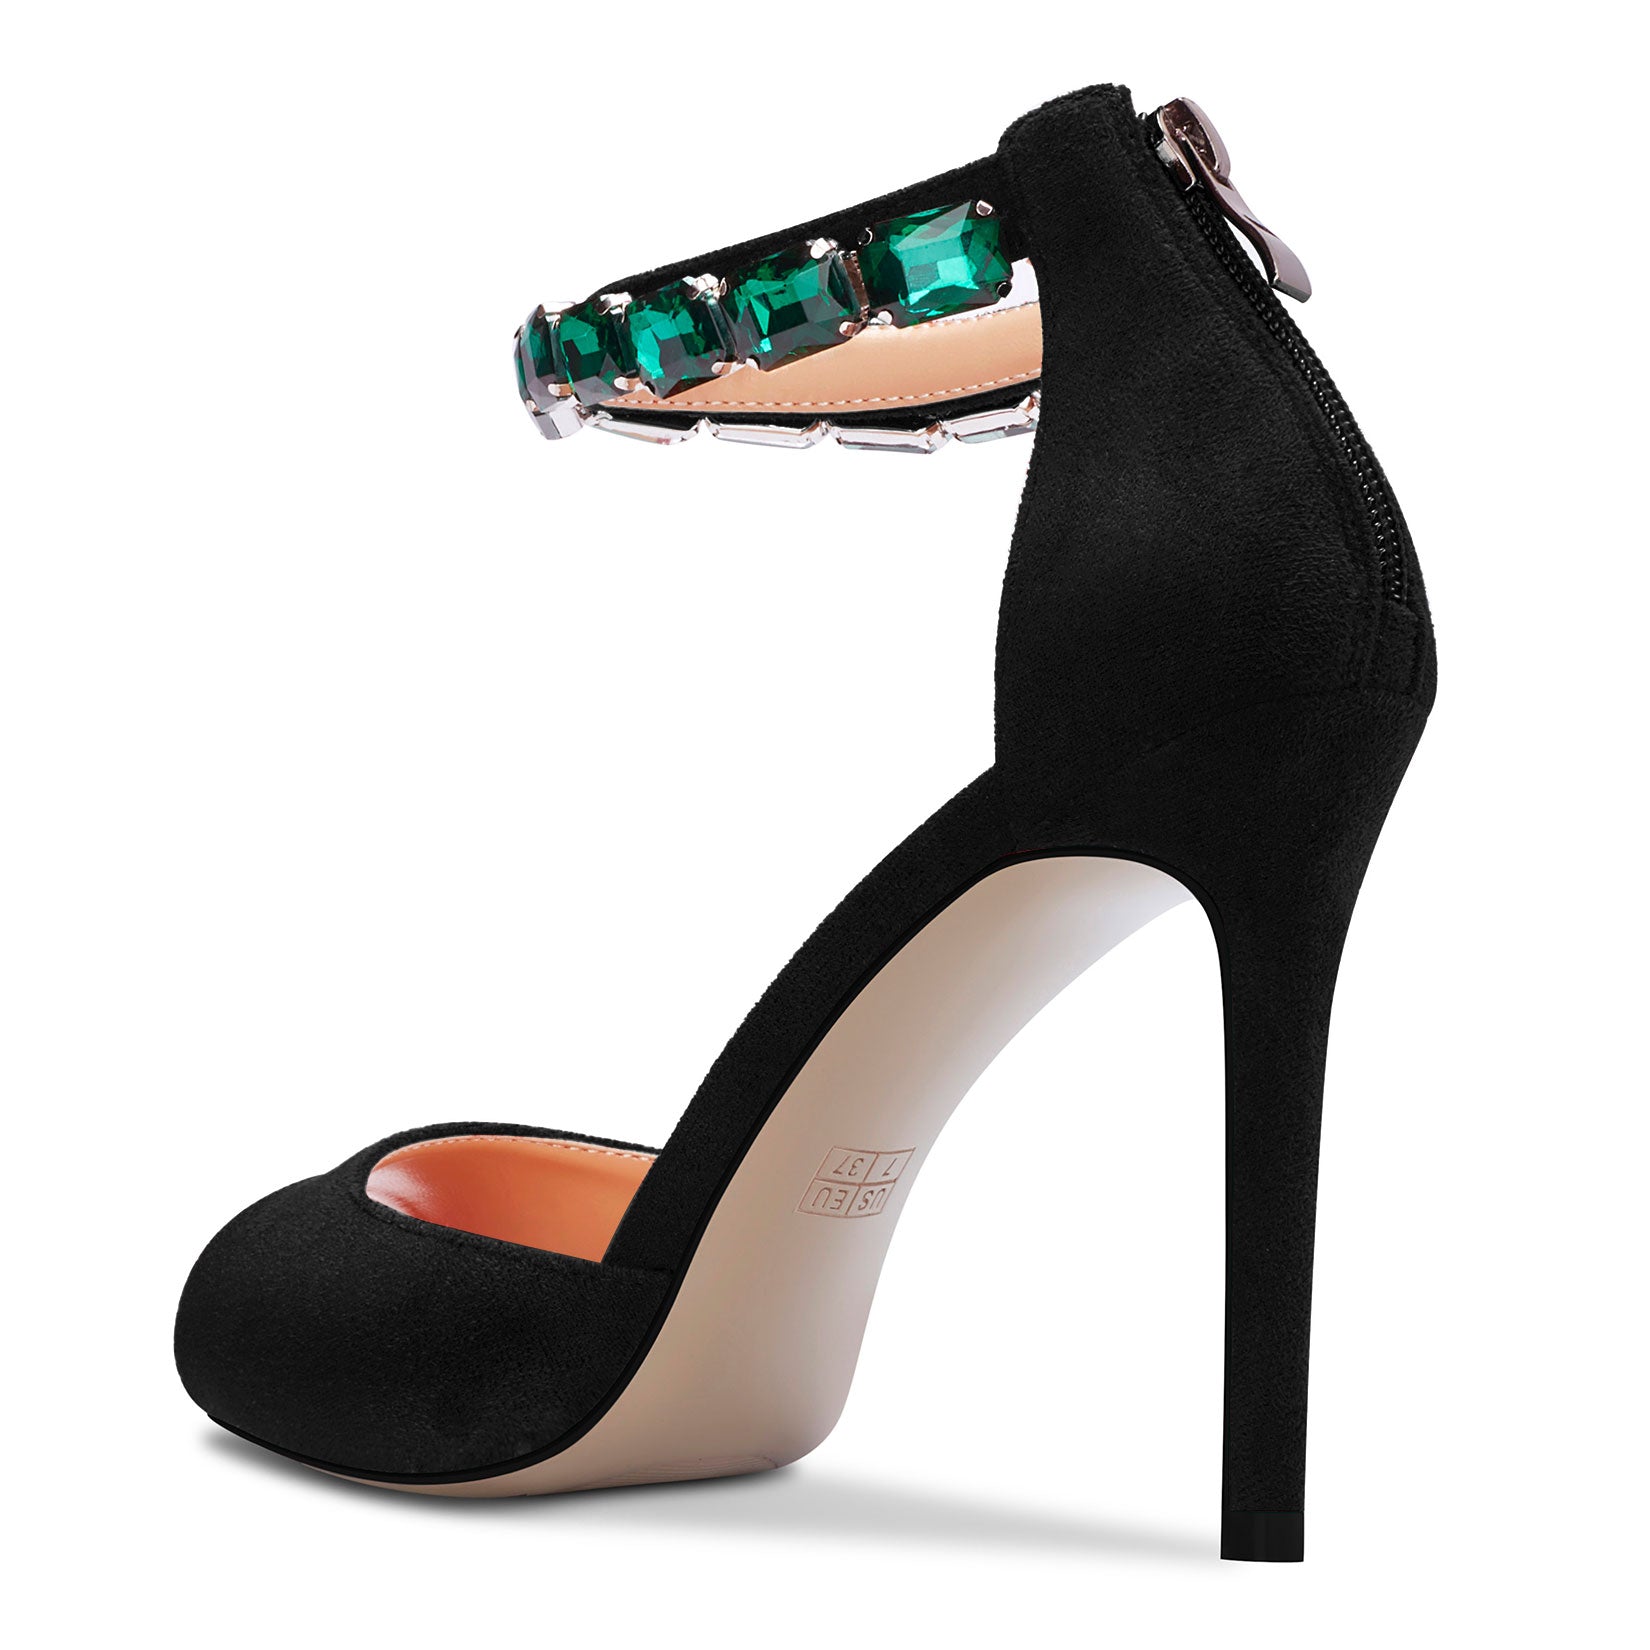 Heels & Wedges | Metro High Heel Black Sandals- 4 Inch Heels | Freeup